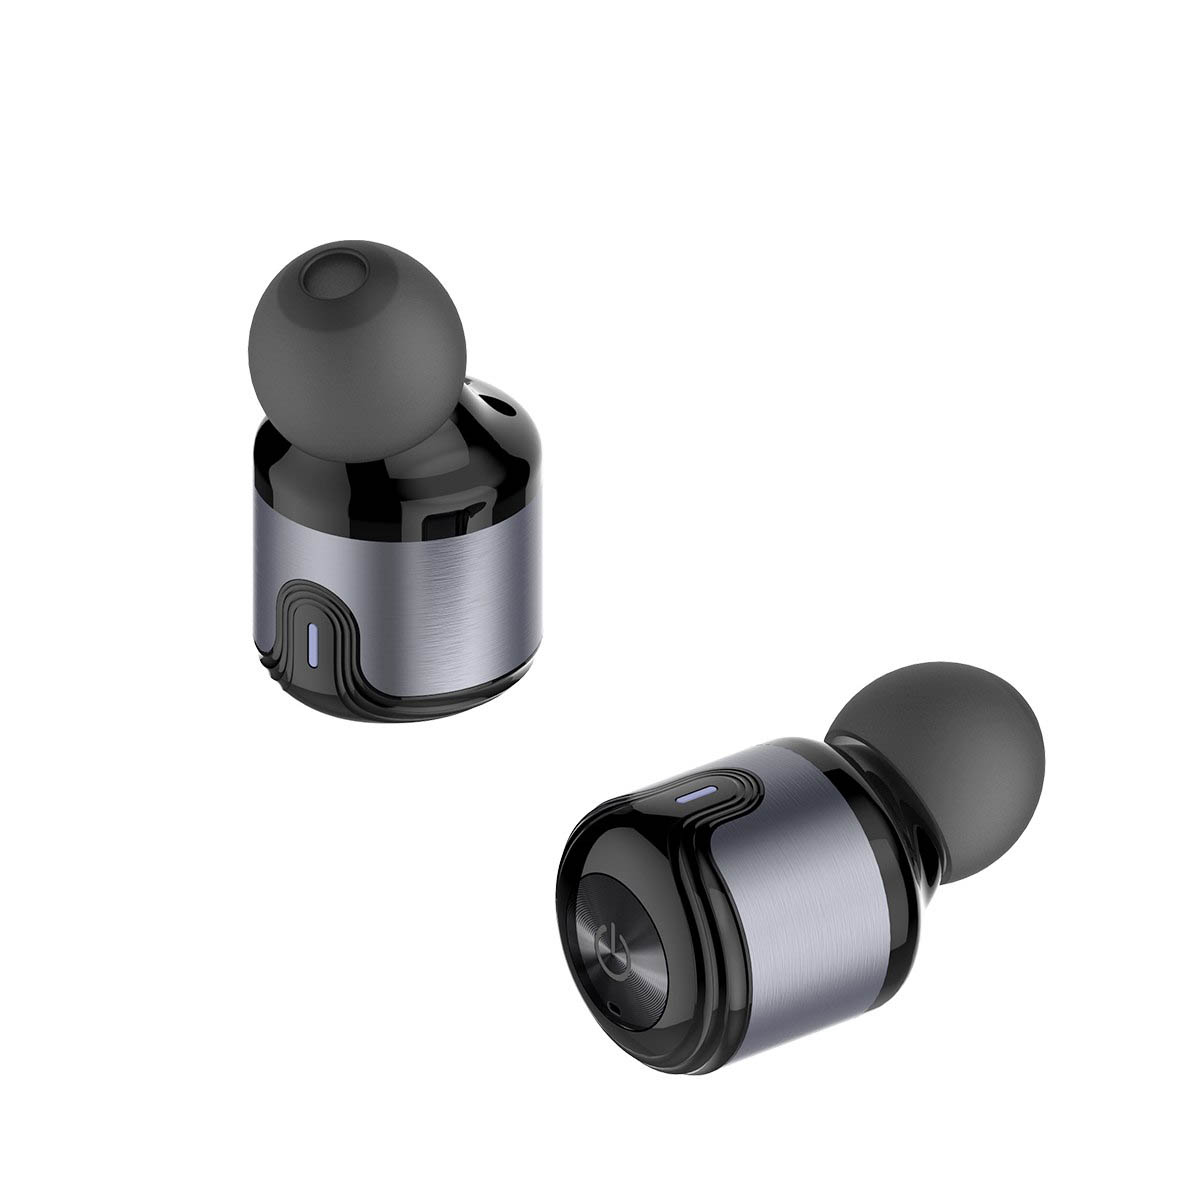 Гарнитура (наушники с микрофоном) беспроводная, AWEI T8 TWS Bluetooth Earphone цвет серый.